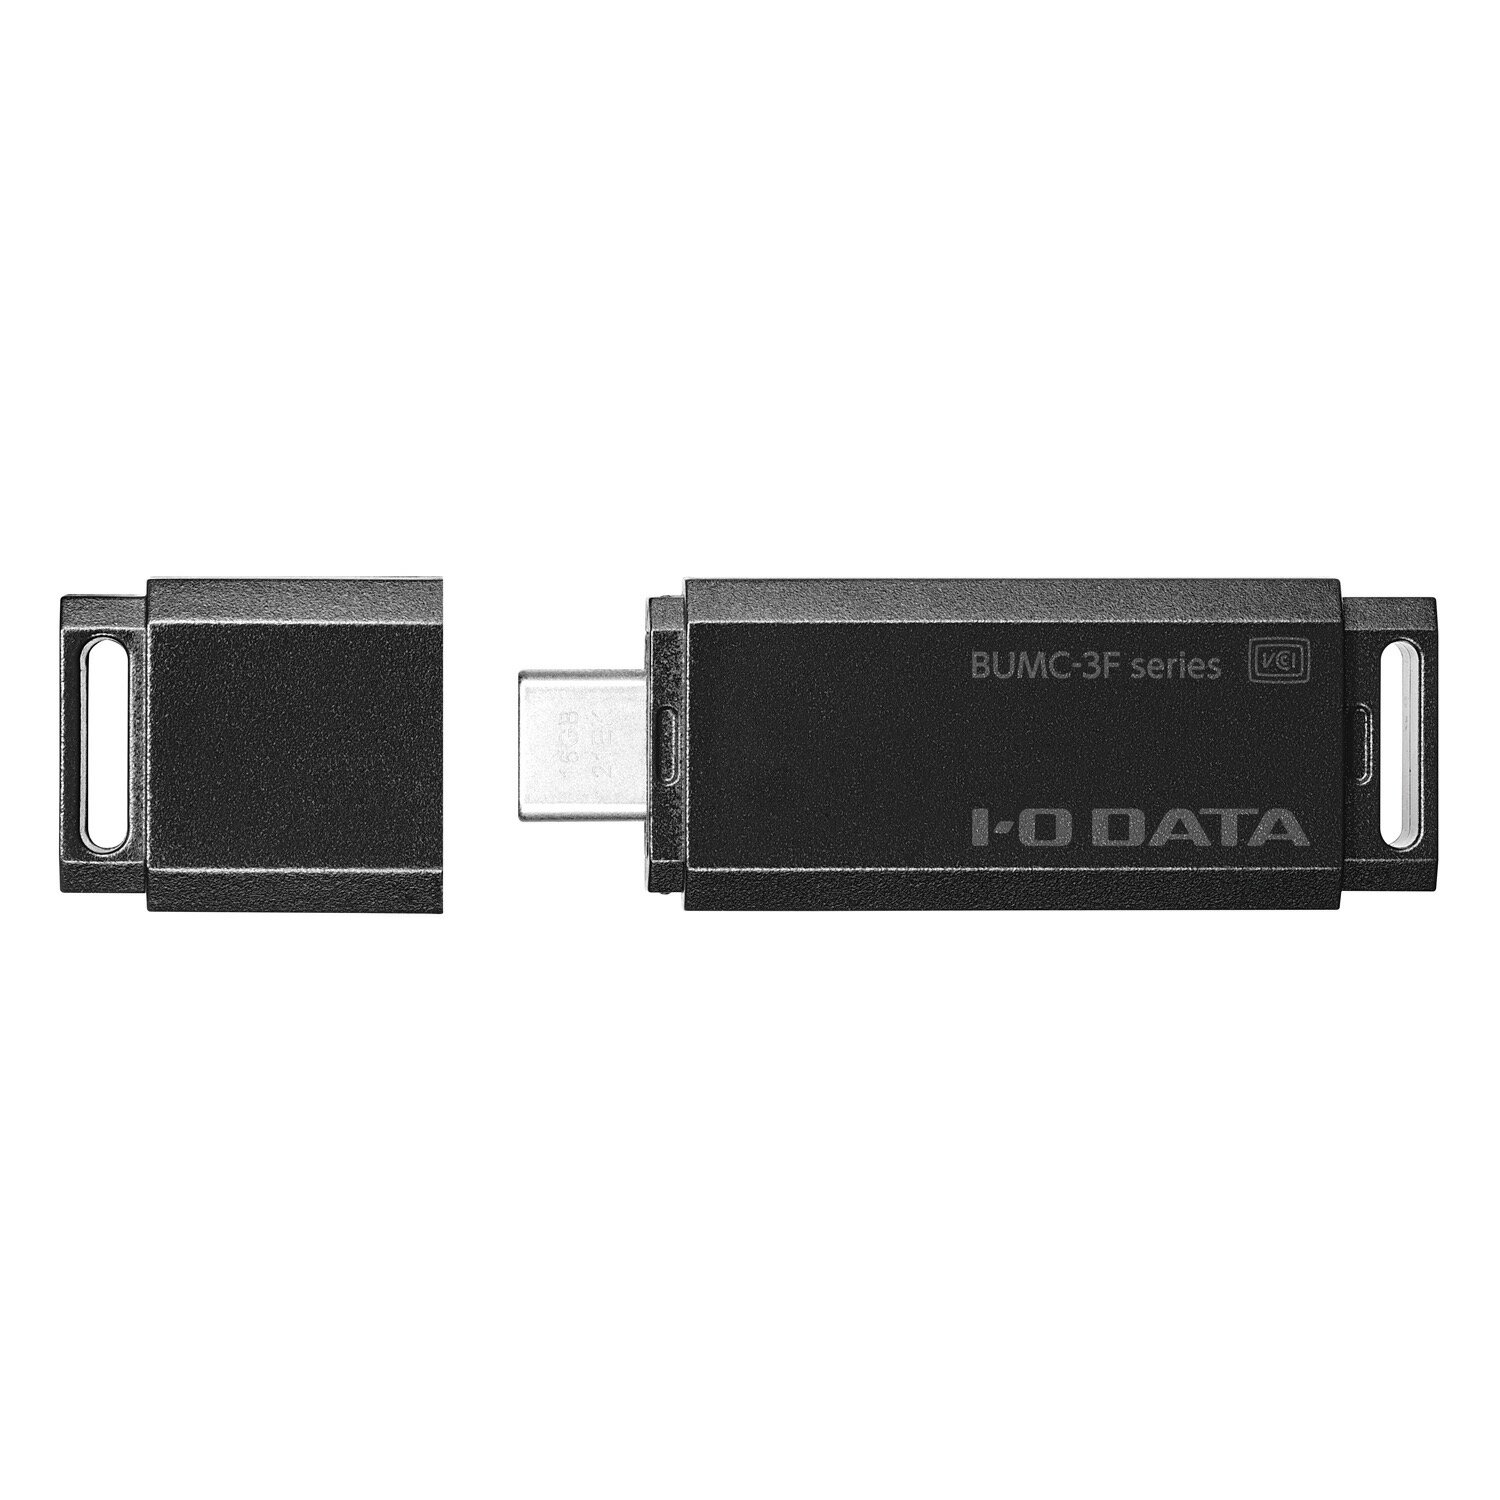 【在庫目安:あり】IODATA BUMC-3F32G/K USB3.2 Gen1（USB3.0）対応 USB Type-C専用USBメモリー 32GB| パソコン周辺機器 USBメモリー USBフラッシュメモリー USBメモリ USBフラッシュメモリ USB メモリ